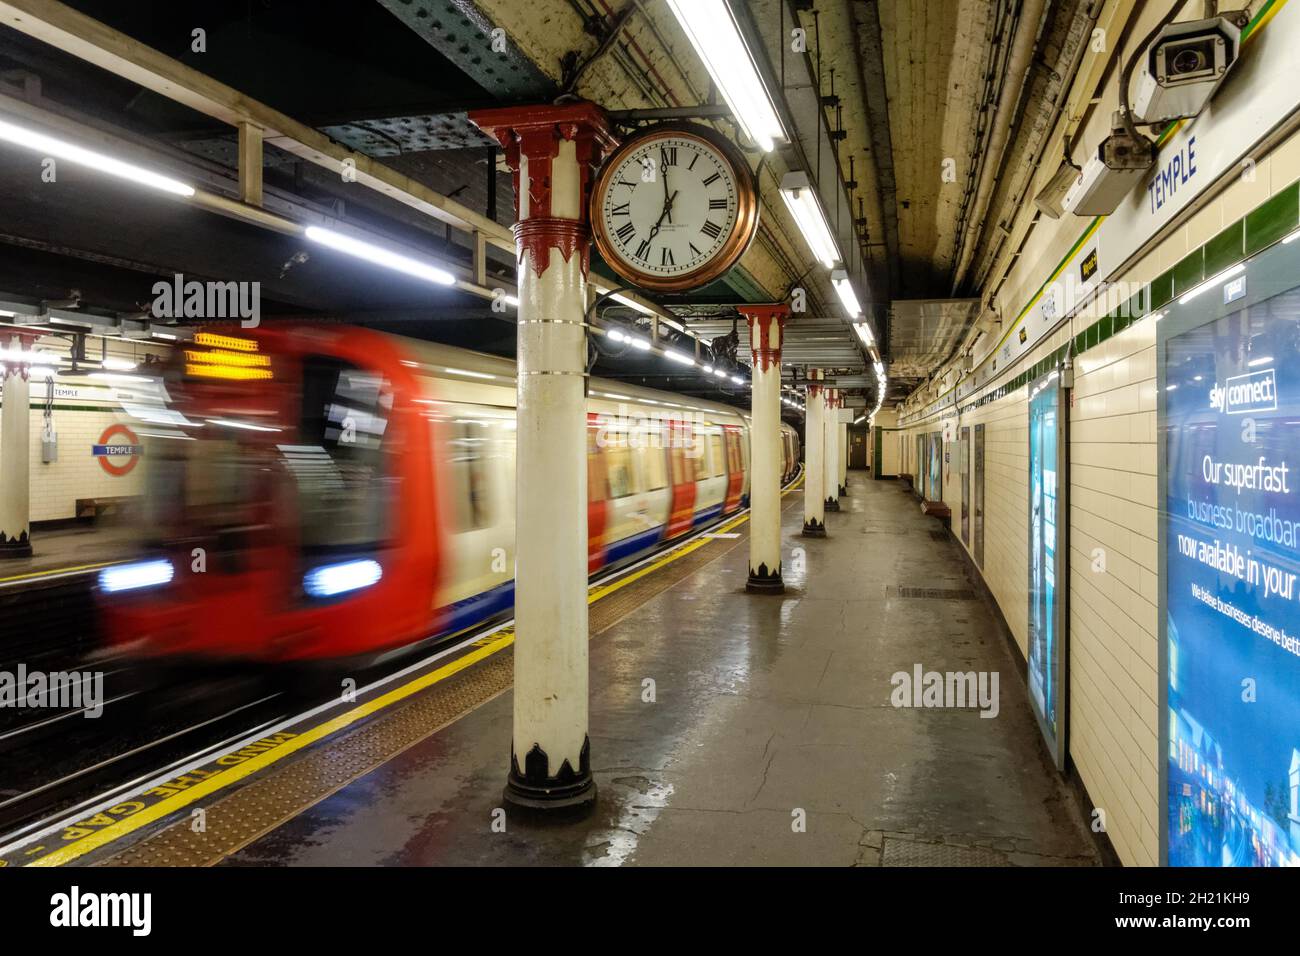 Station de métro London Temple, Londres, Angleterre Royaume-Uni Banque D'Images